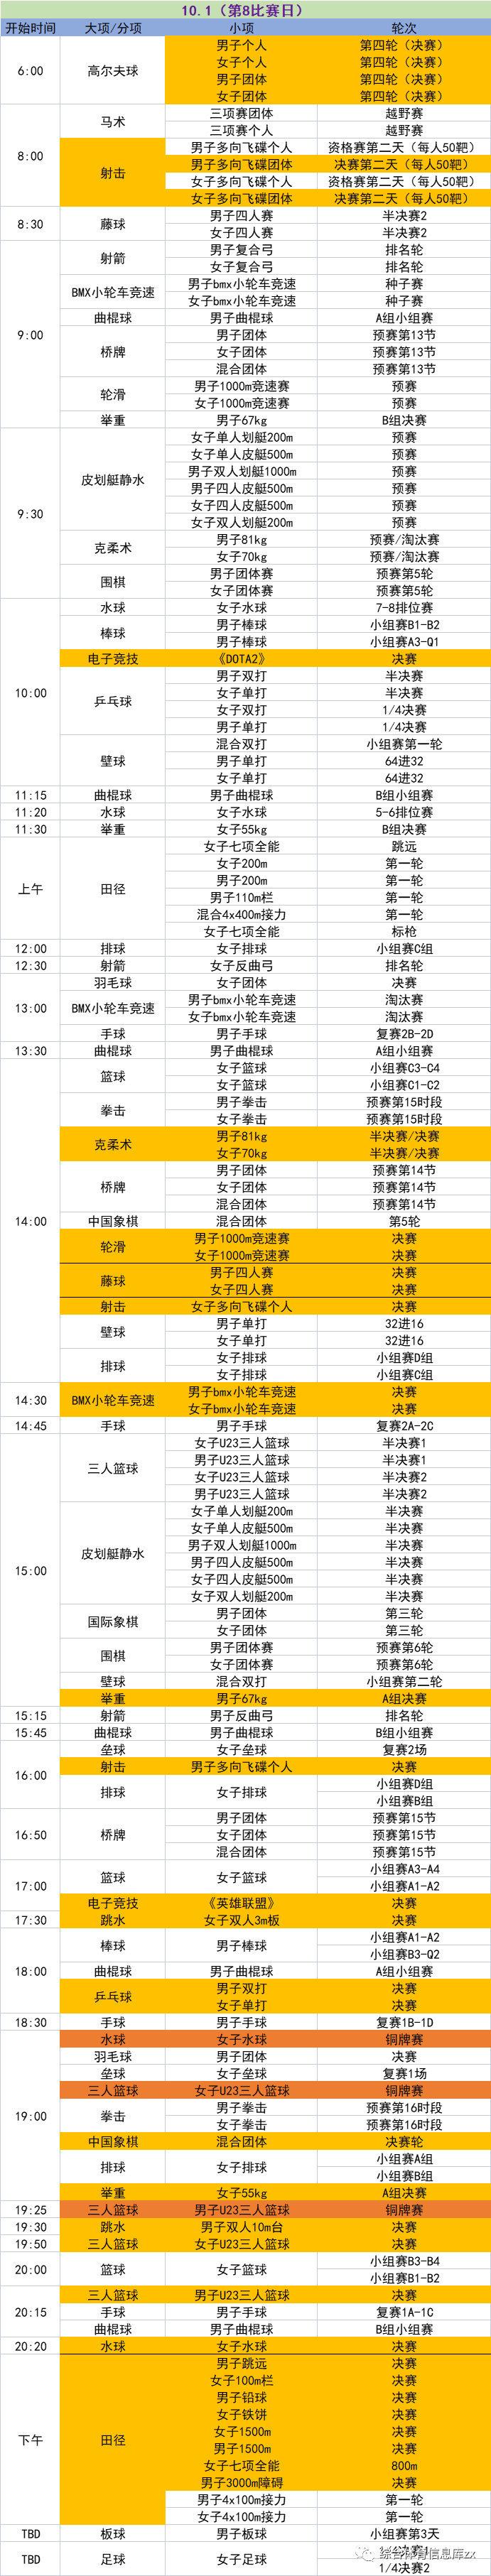 杭州亚运会电竞部分日程安排：10月1日将进行《Dota2》、《英雄联盟》的决赛，